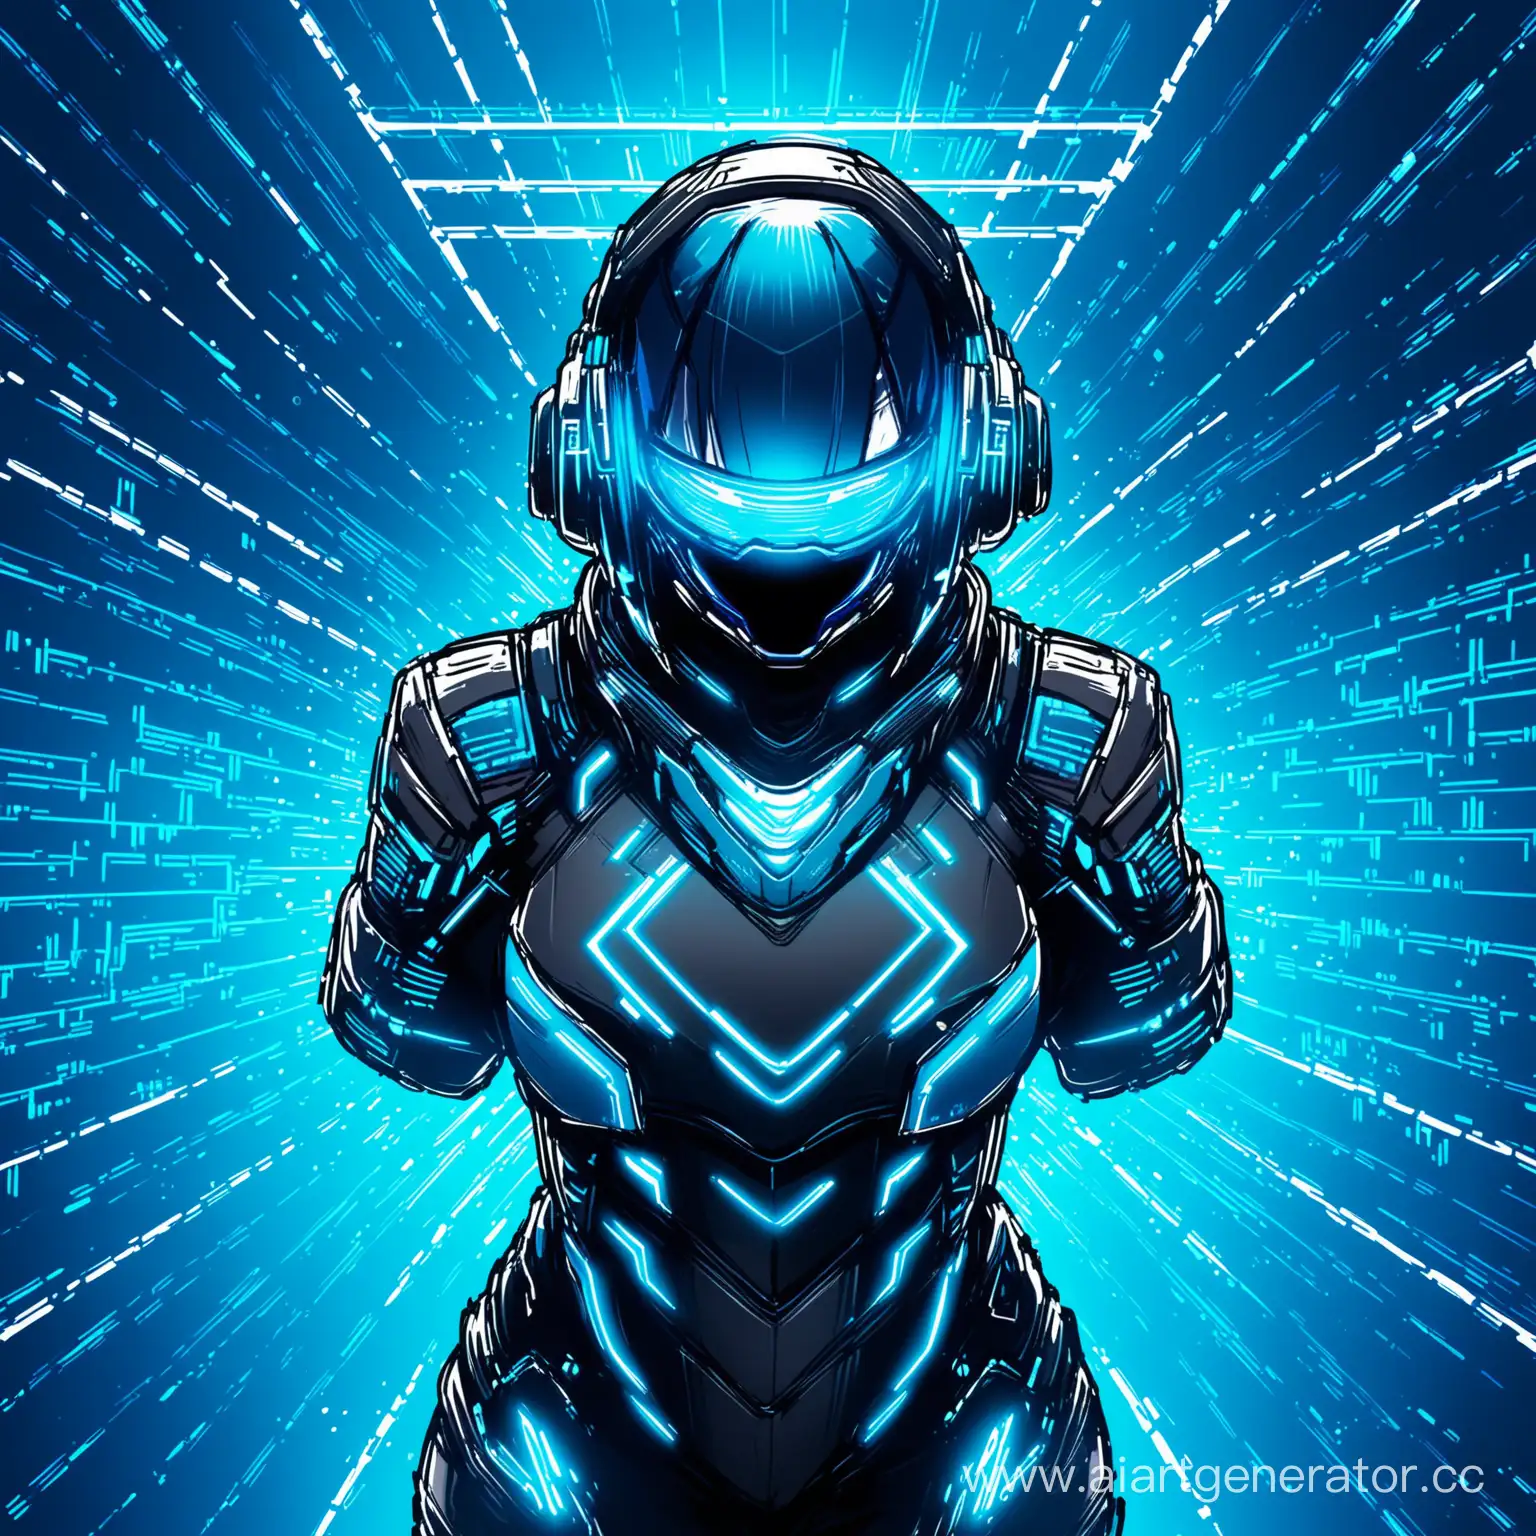 Futuristic-Blue-Cyber-Sports-Arena-Background